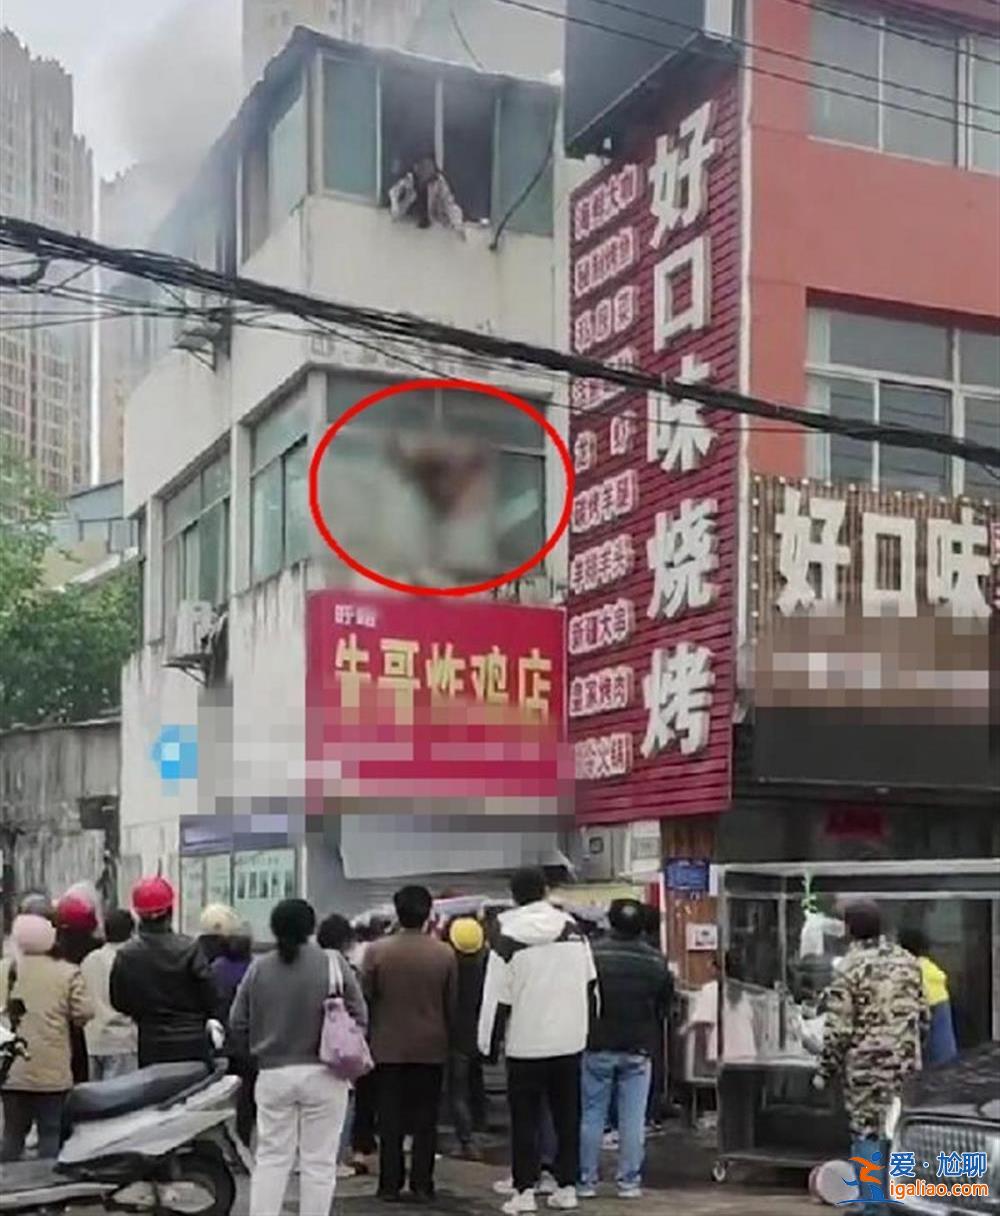 江苏淮安一居民楼发生火灾 女子将2小孩扔下楼被接住 自己跳下身亡？